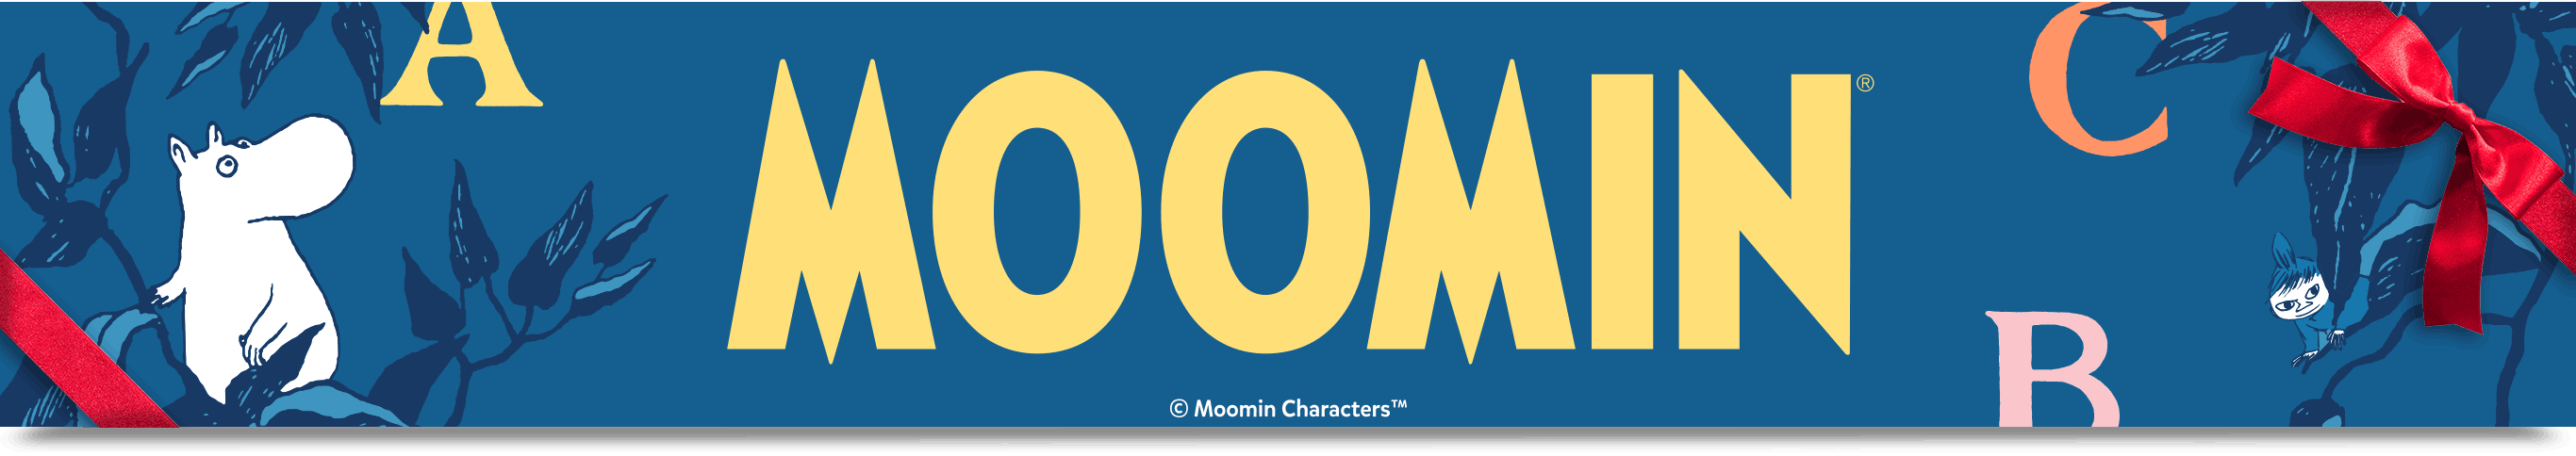 Moomin Series